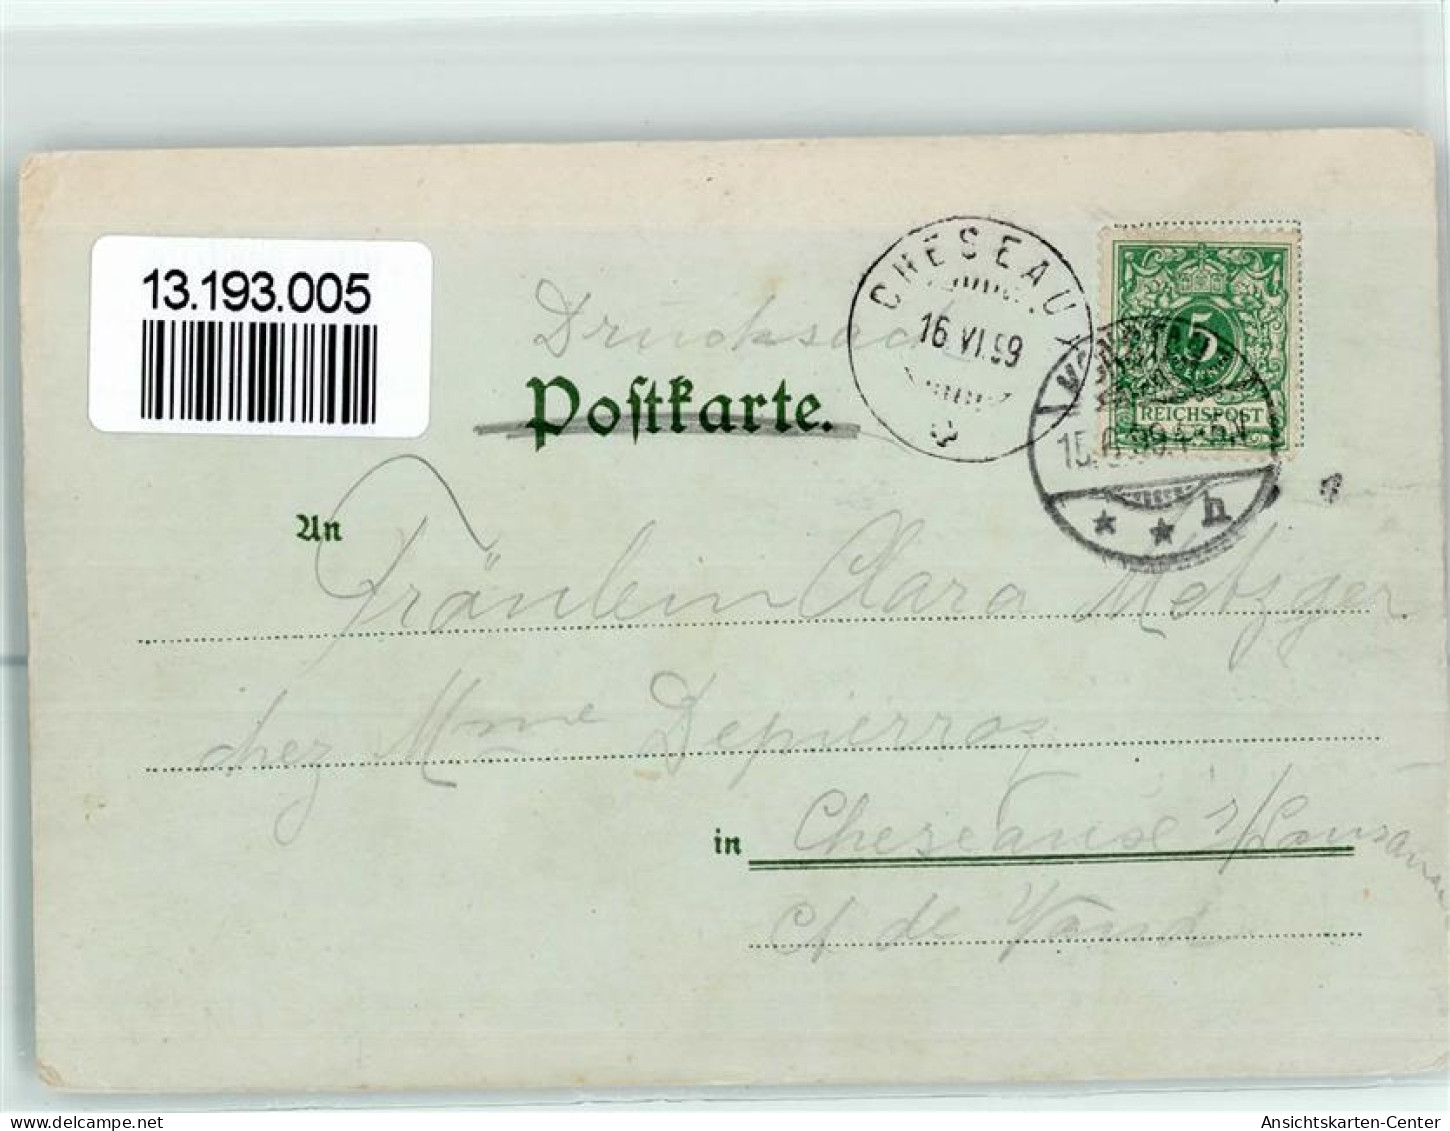 13193005 - Konstanz - Konstanz